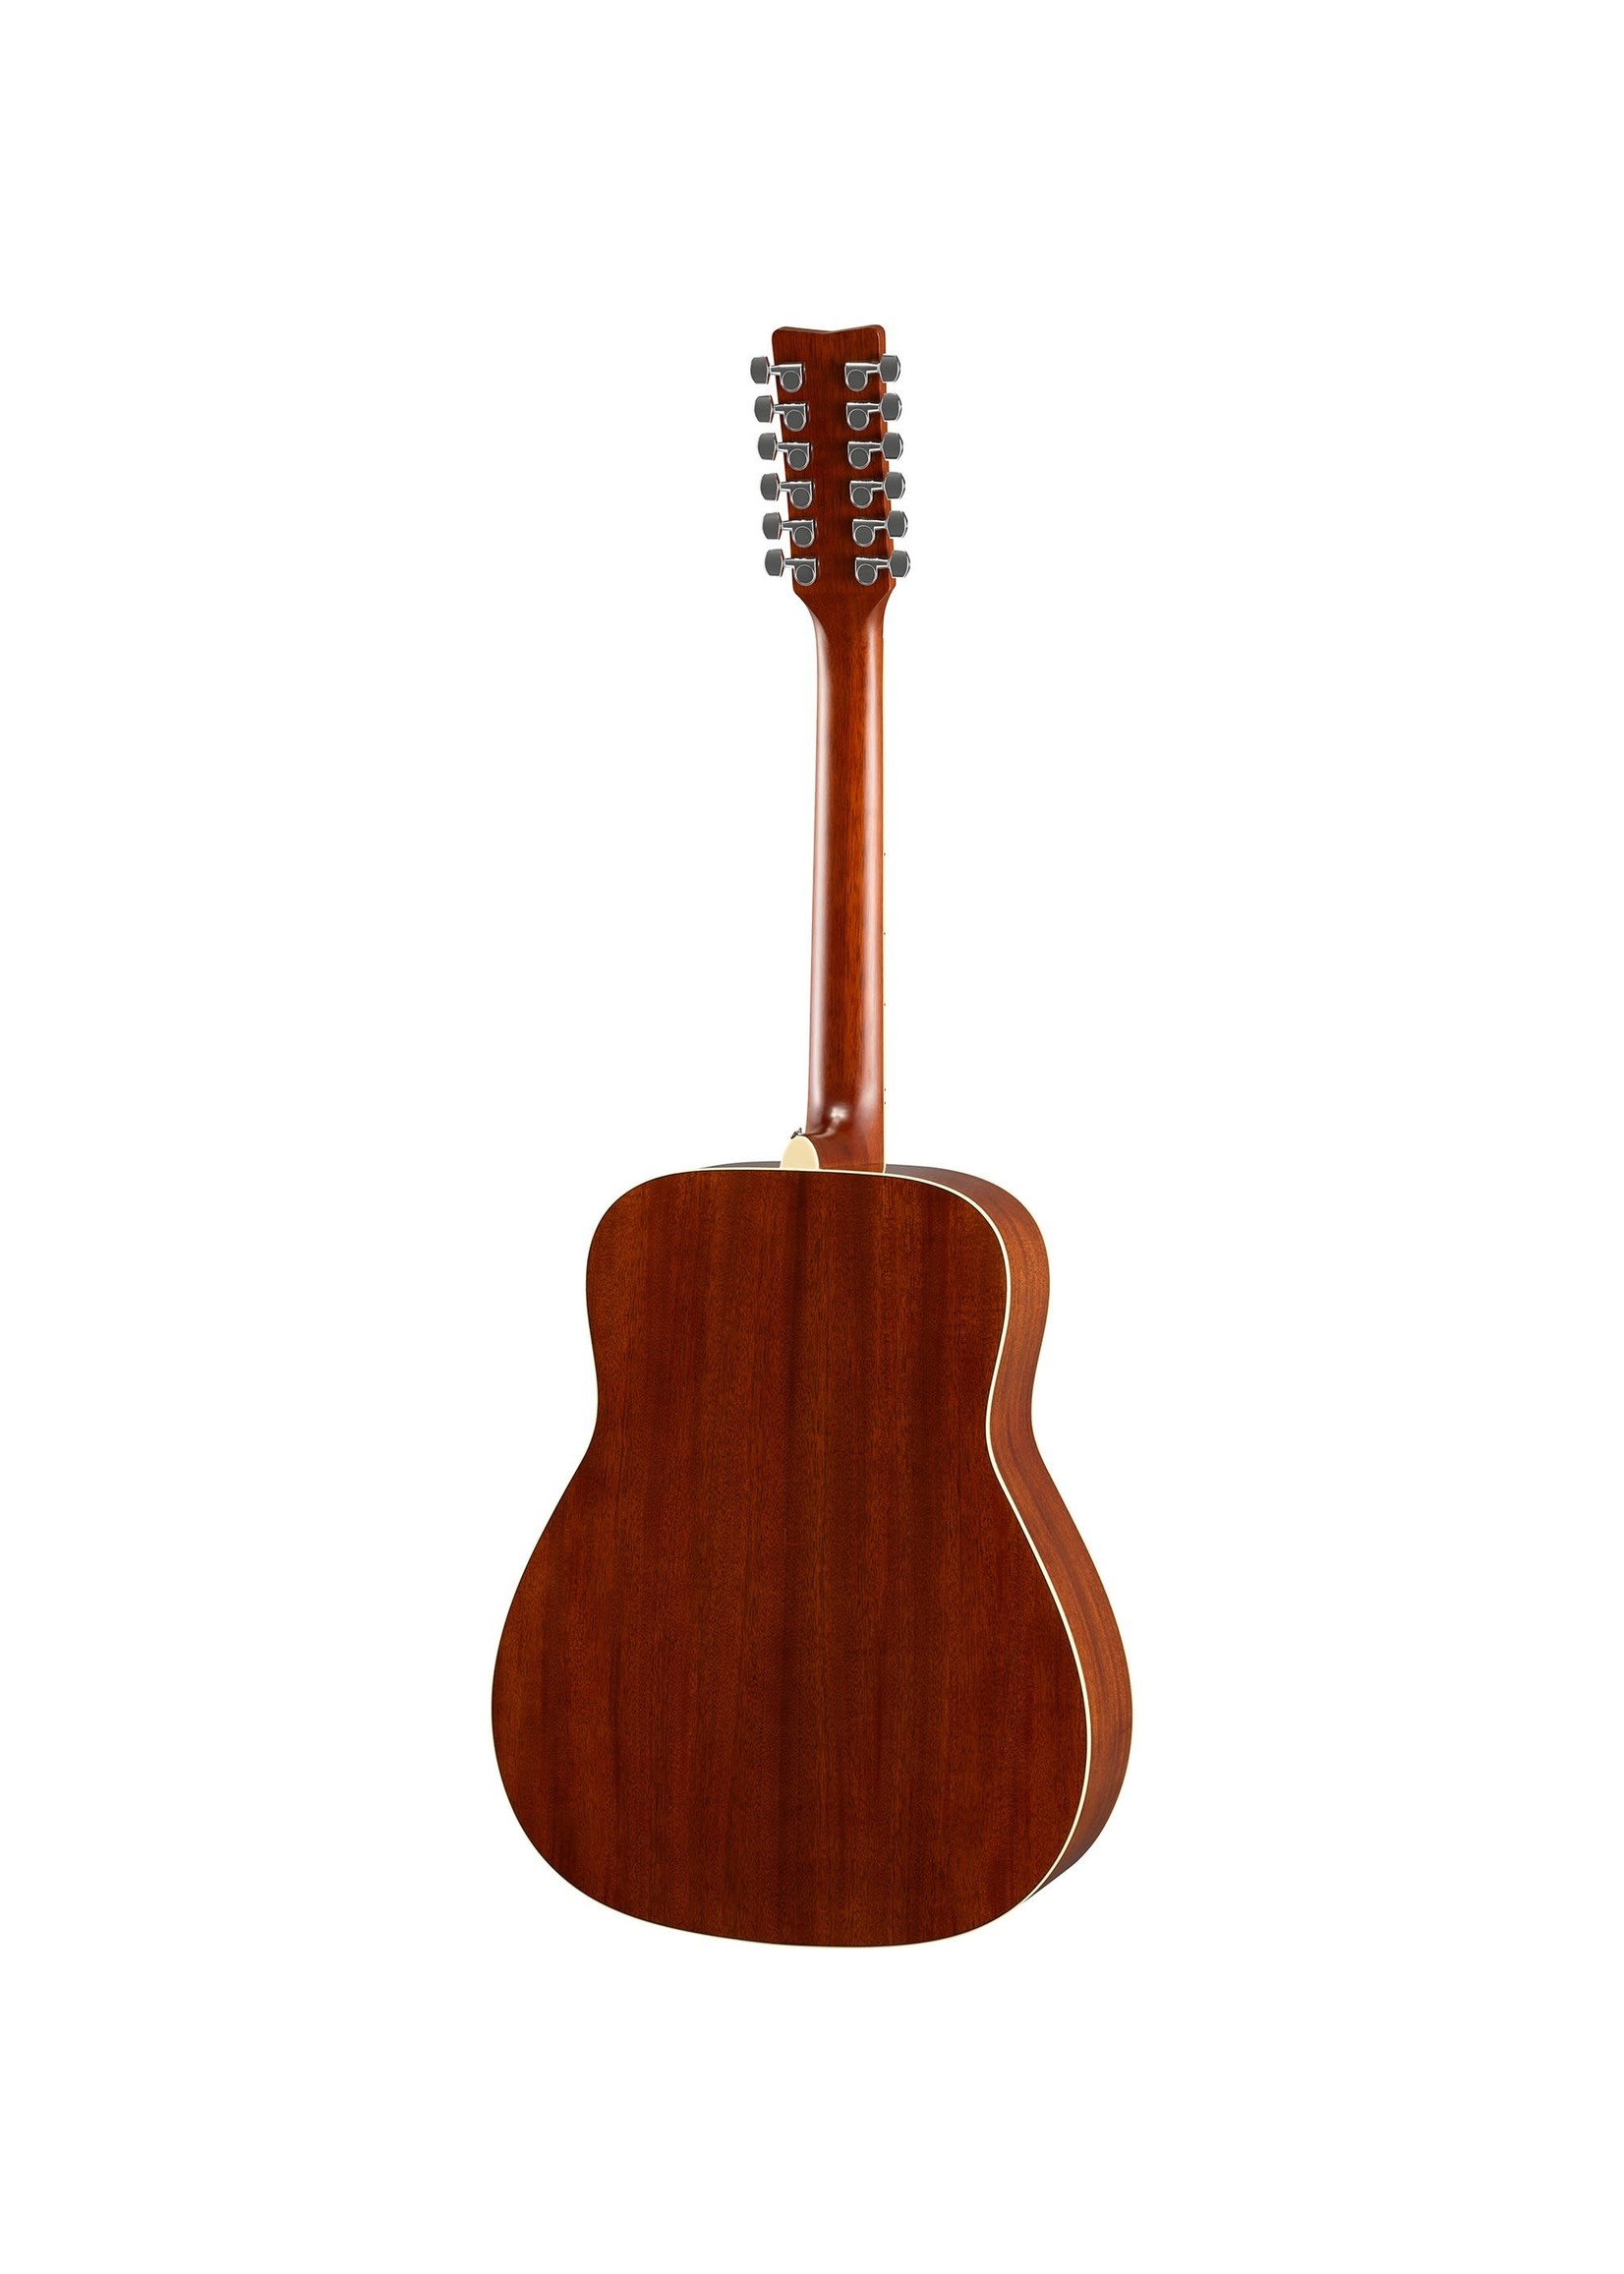 Yamaha Yamaha Acoustic 12 String Guitar FG820-12 Natural